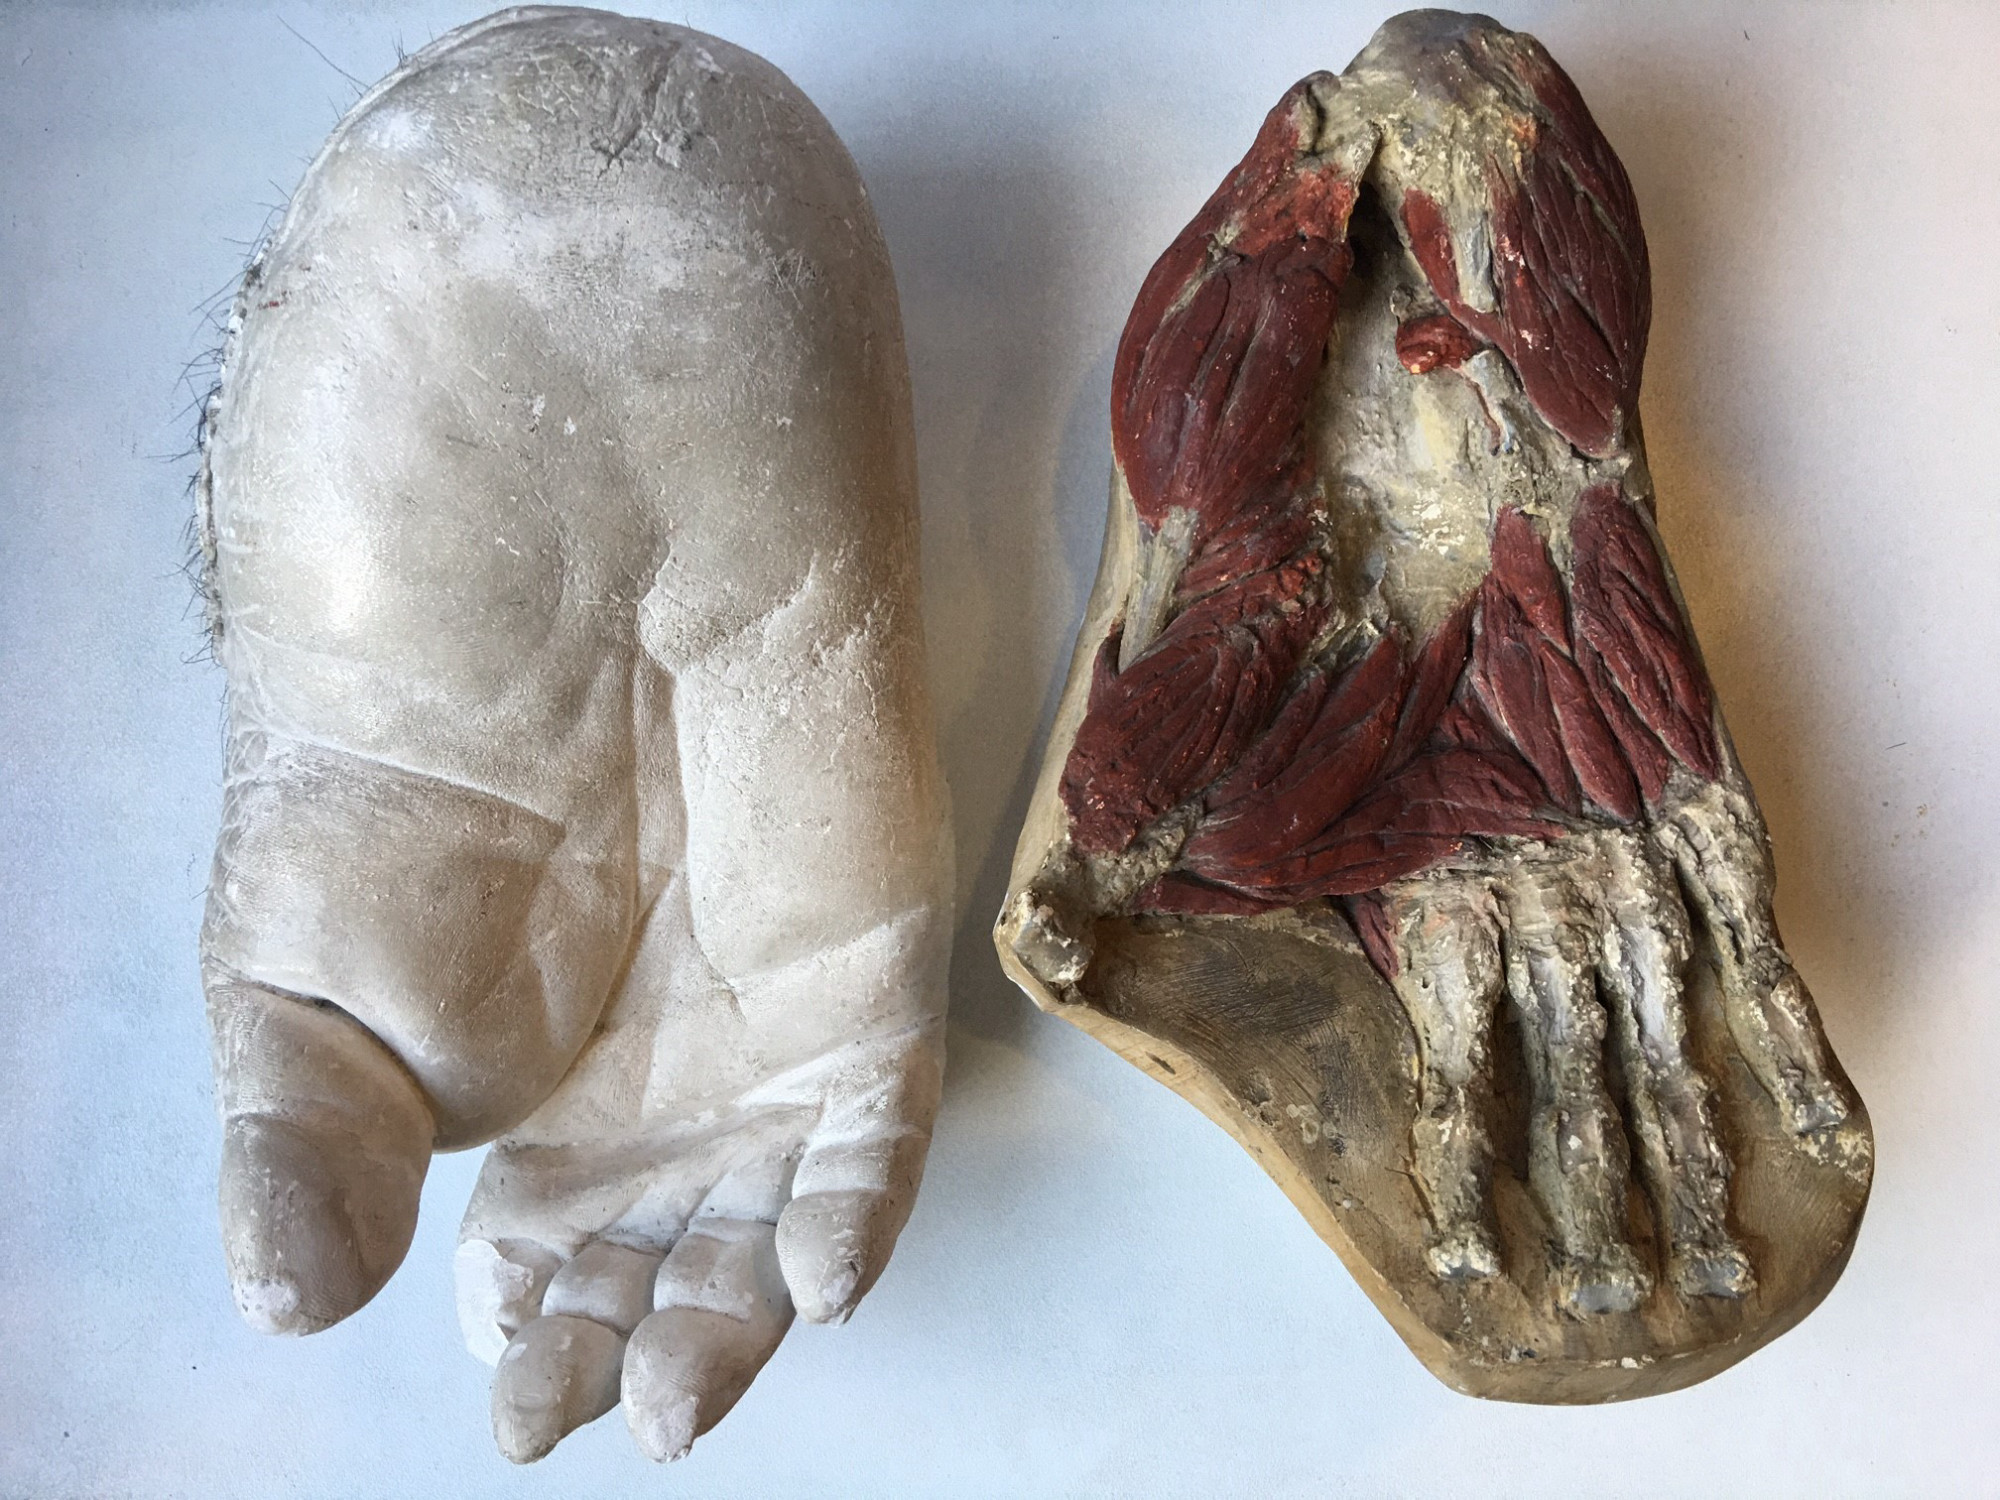 Zwei Gipsabgüsse eines Fußes des Gorillas "Bobby" sind nebeneinanderliegend aus Vogelperspektive fotografiert; beim linken Abguss sind die Muskeln freigelegt und eingefärbt, daneben liegt ein weißer Abguss des Fußes.